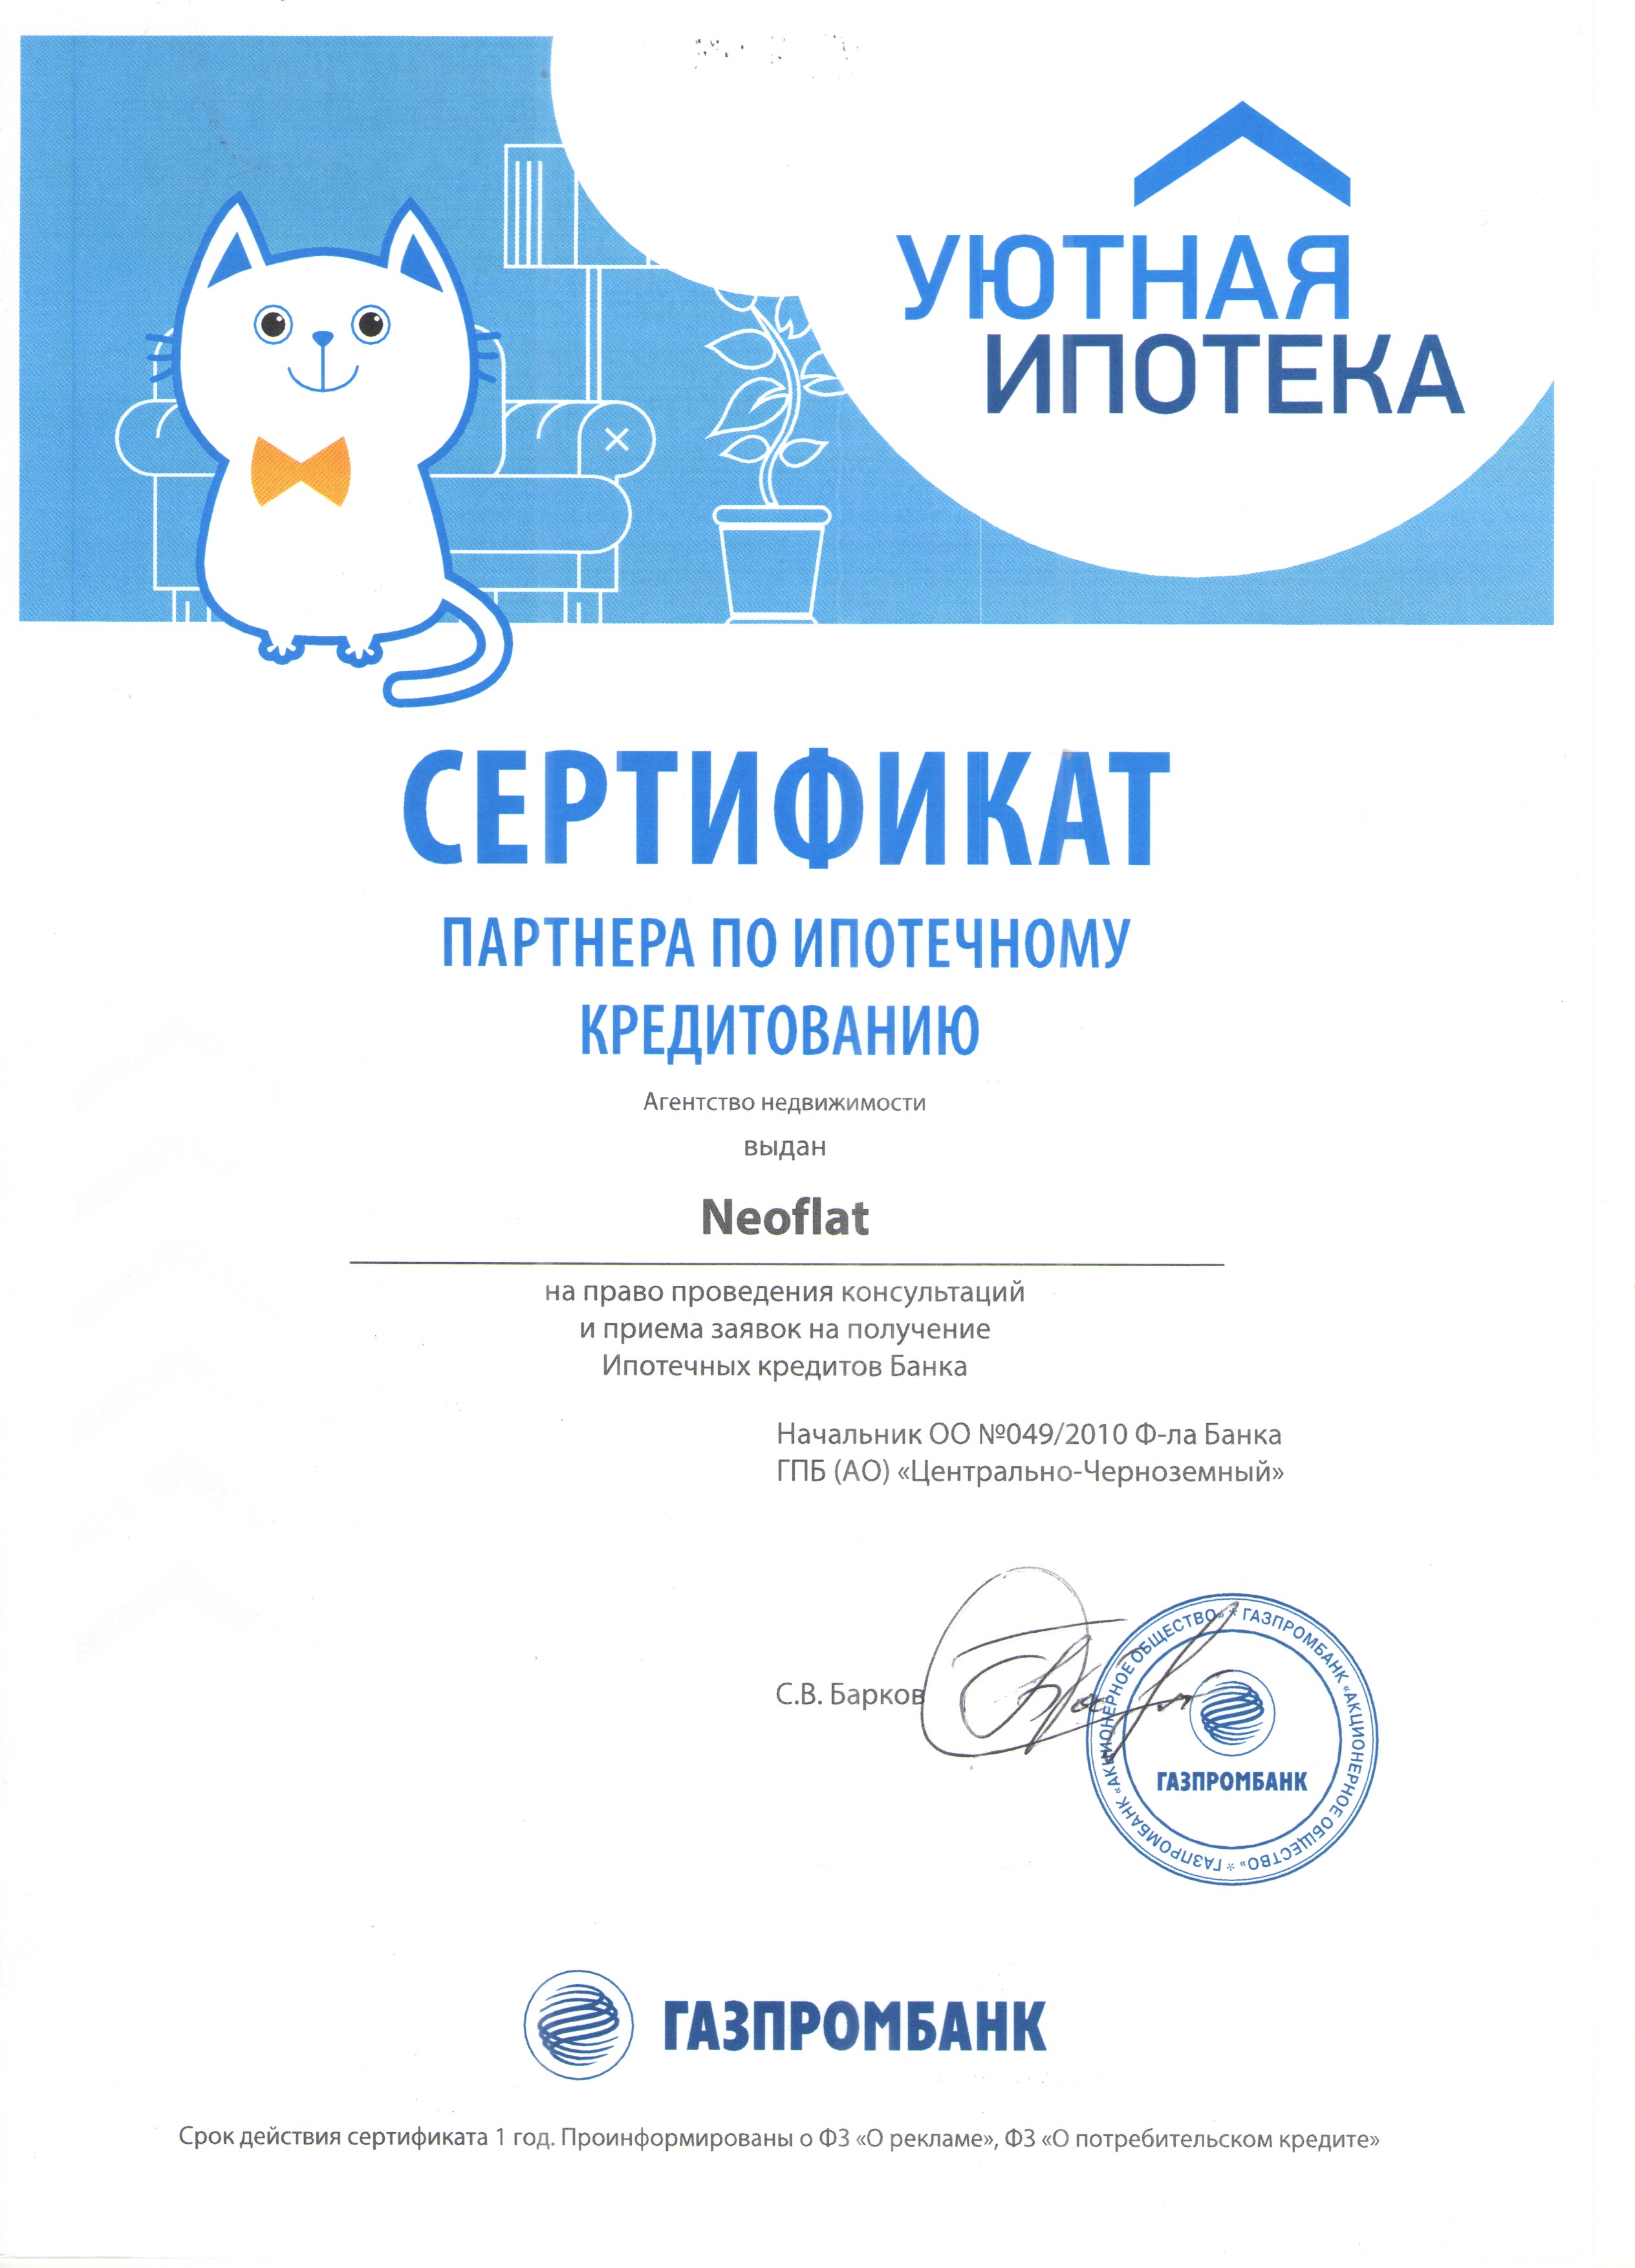 Сертификат партнера по ипотечному кредитованию 